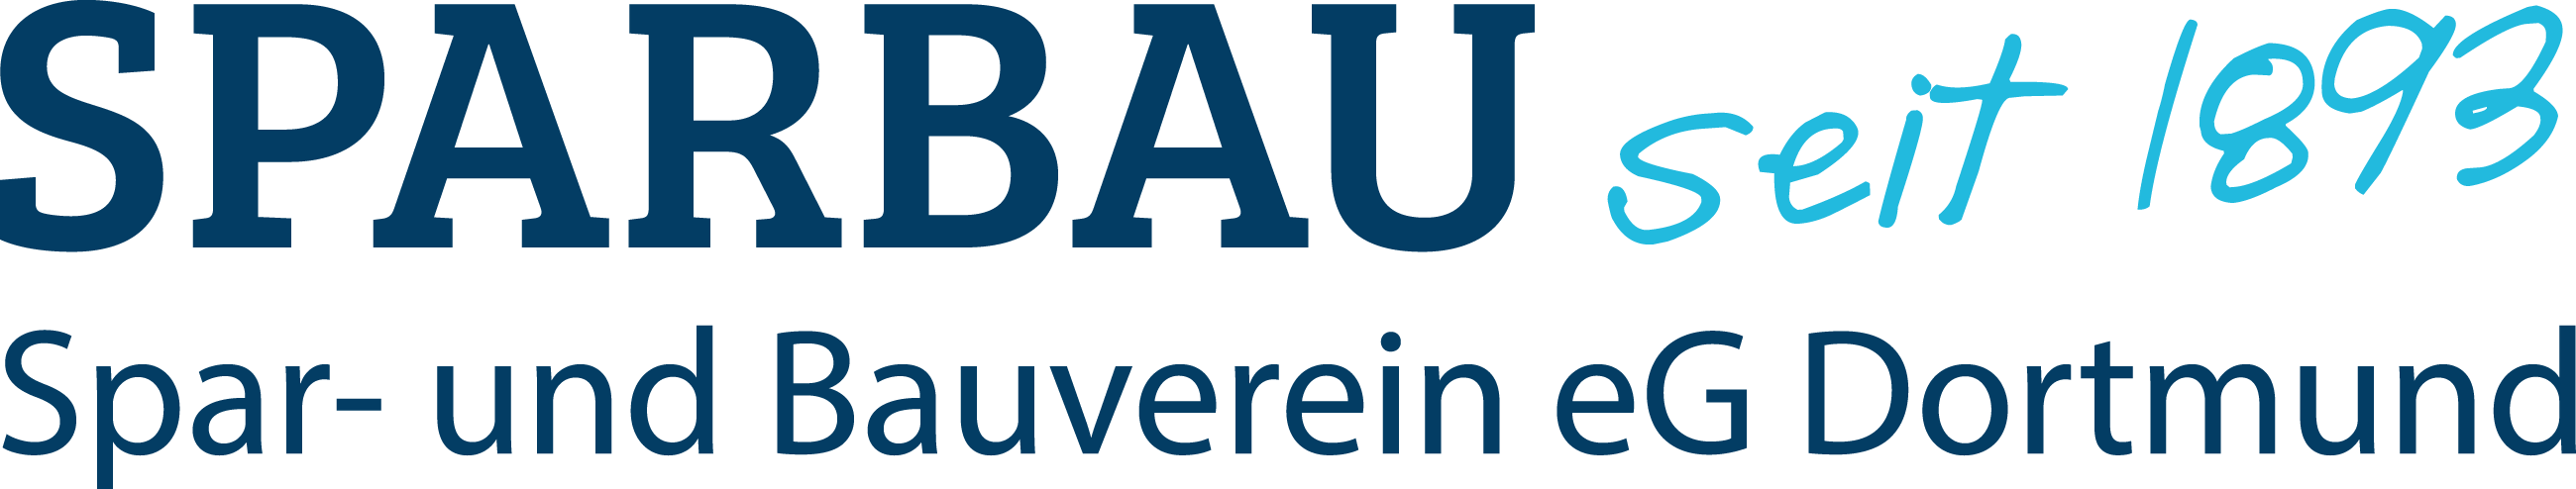 Spar- und Bauverein eG Dortmund Geschäftsbericht Logo